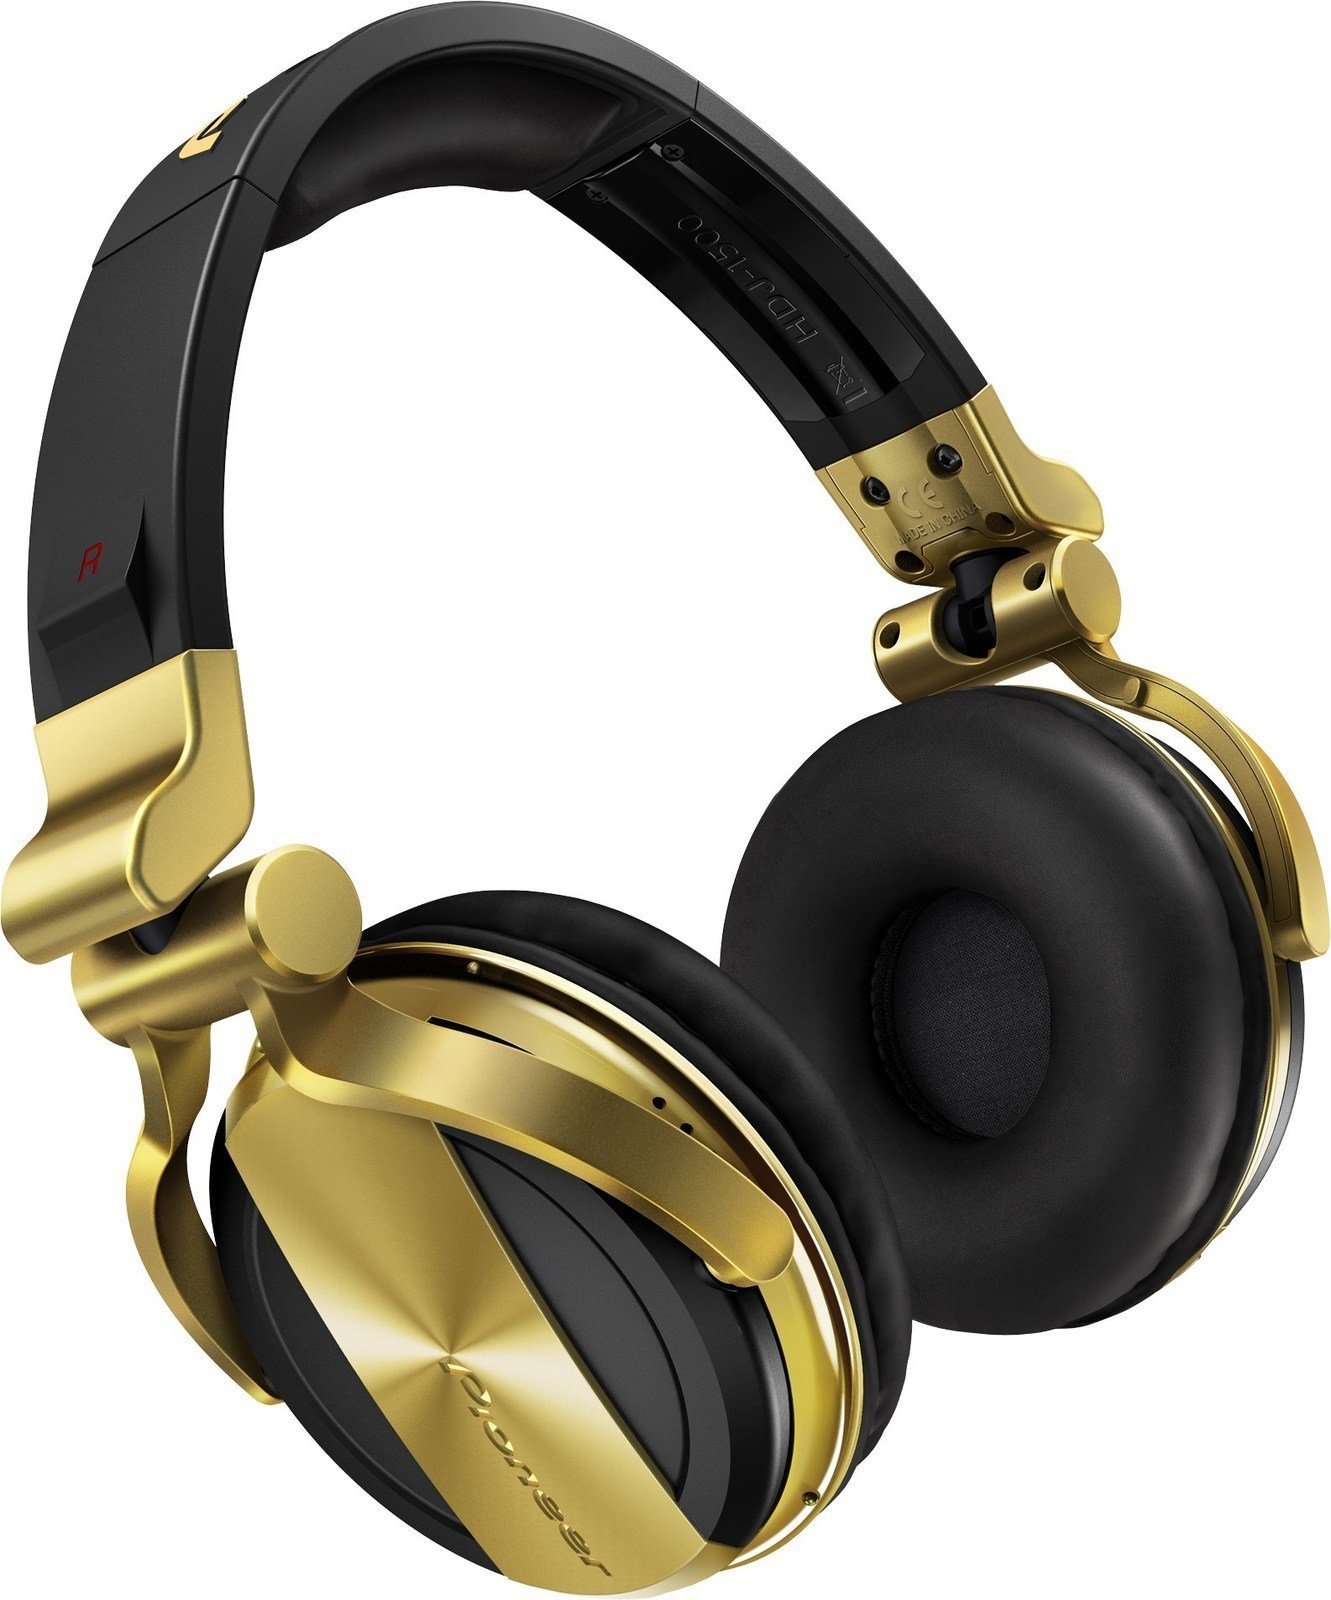 DJ slušalke Pioneer Dj HDJ-1500-N Gold